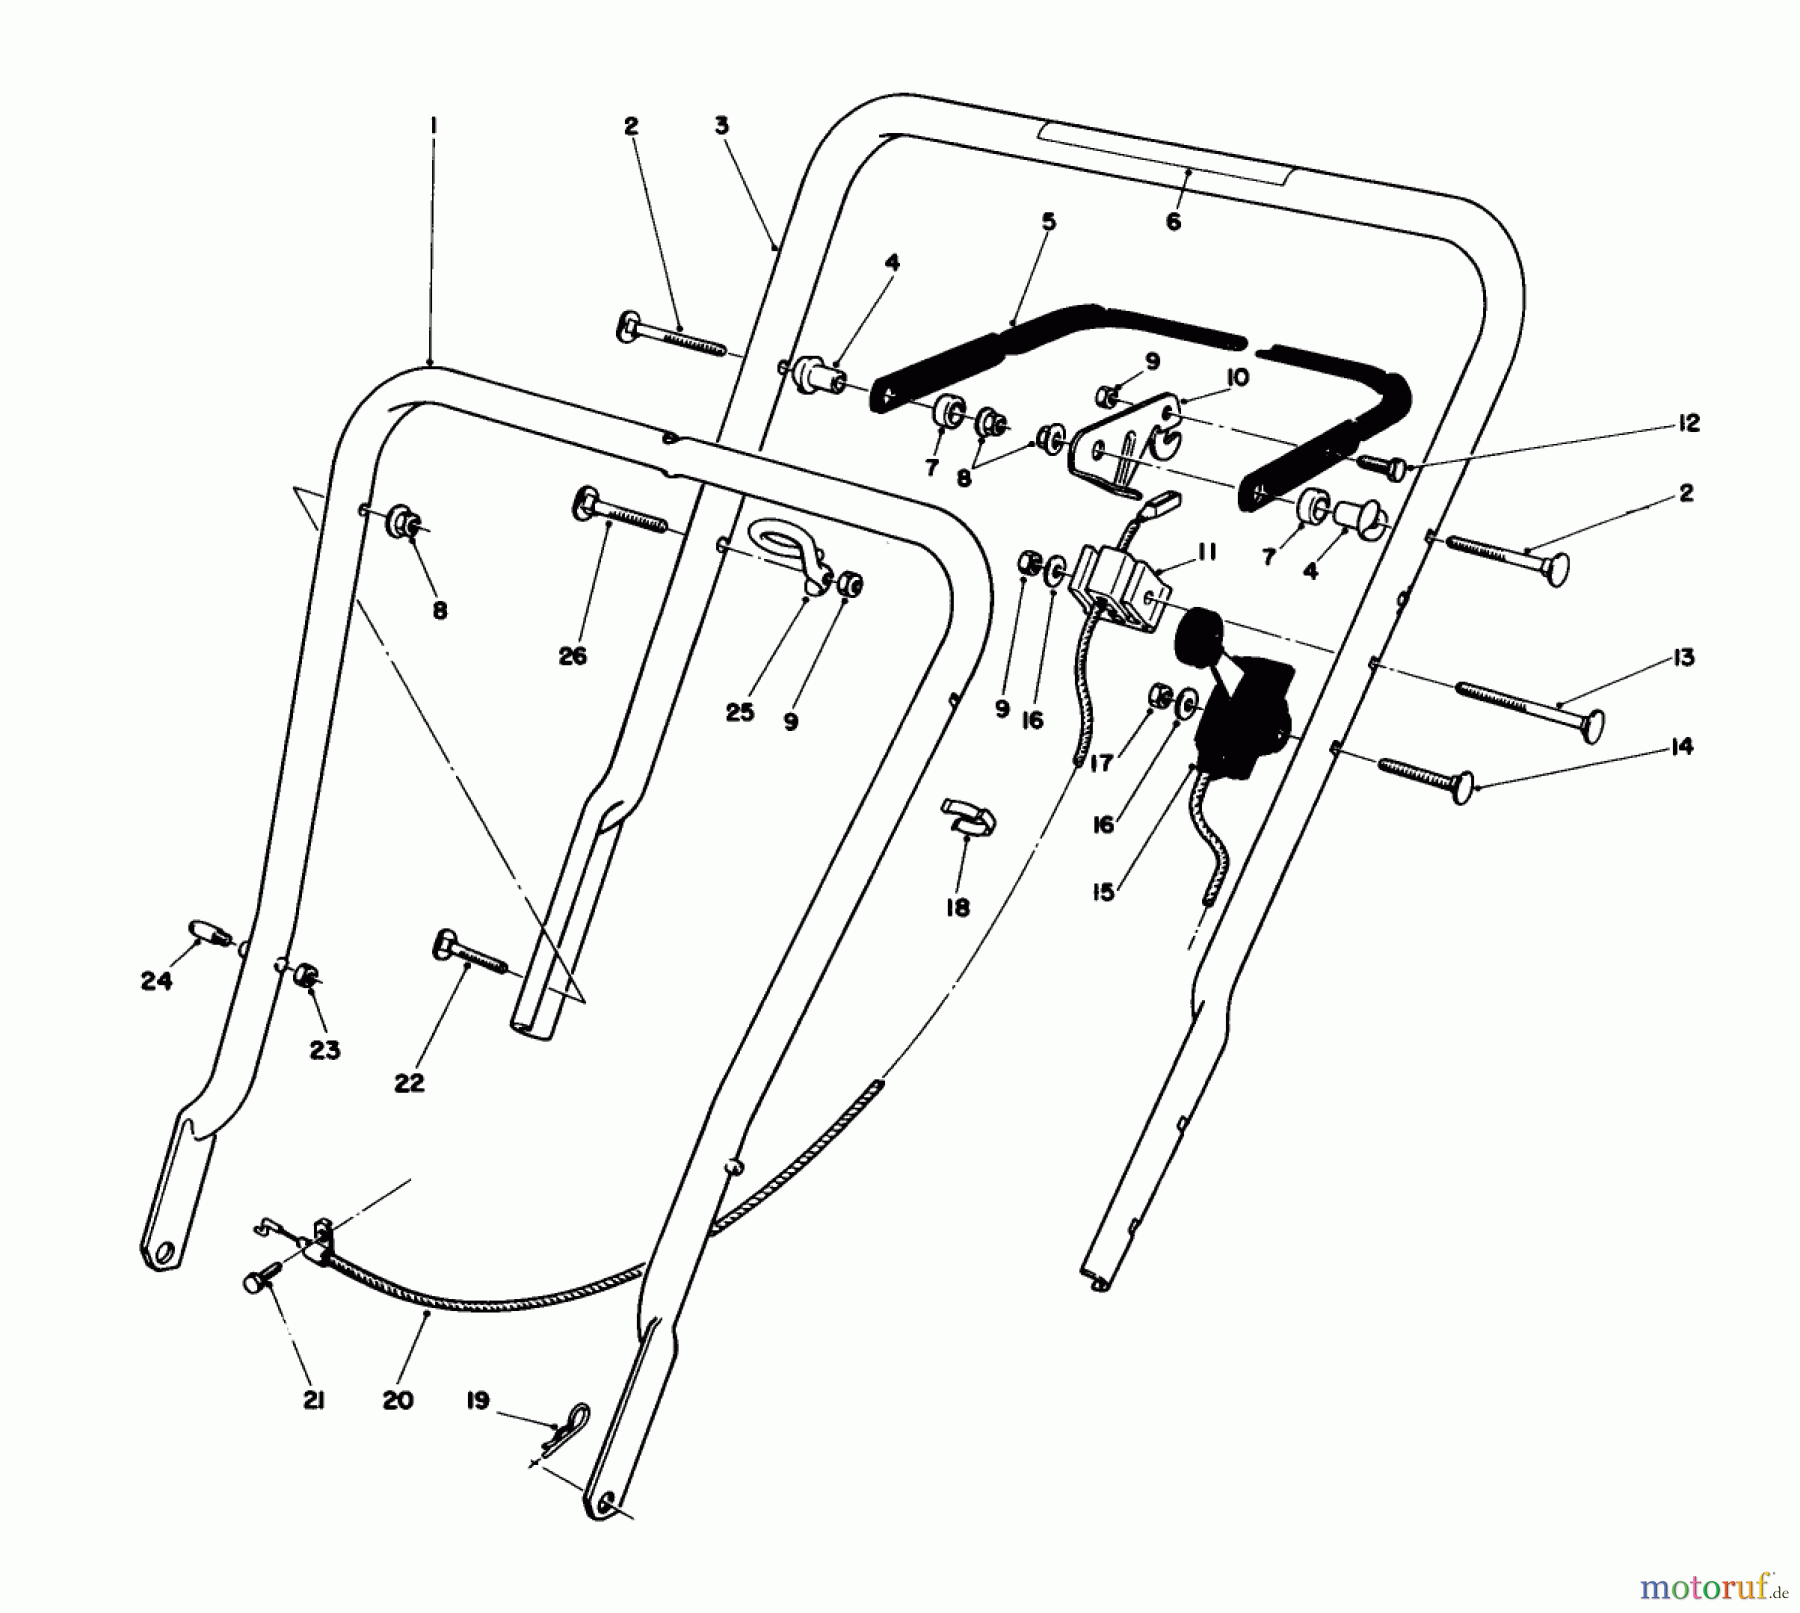  Toro Neu Mowers, Walk-Behind Seite 1 16575C - Toro Lawnmower, 1988 (8000001-8999999) BAGGING KIT NO. 47-6510 (OPTIONAL)